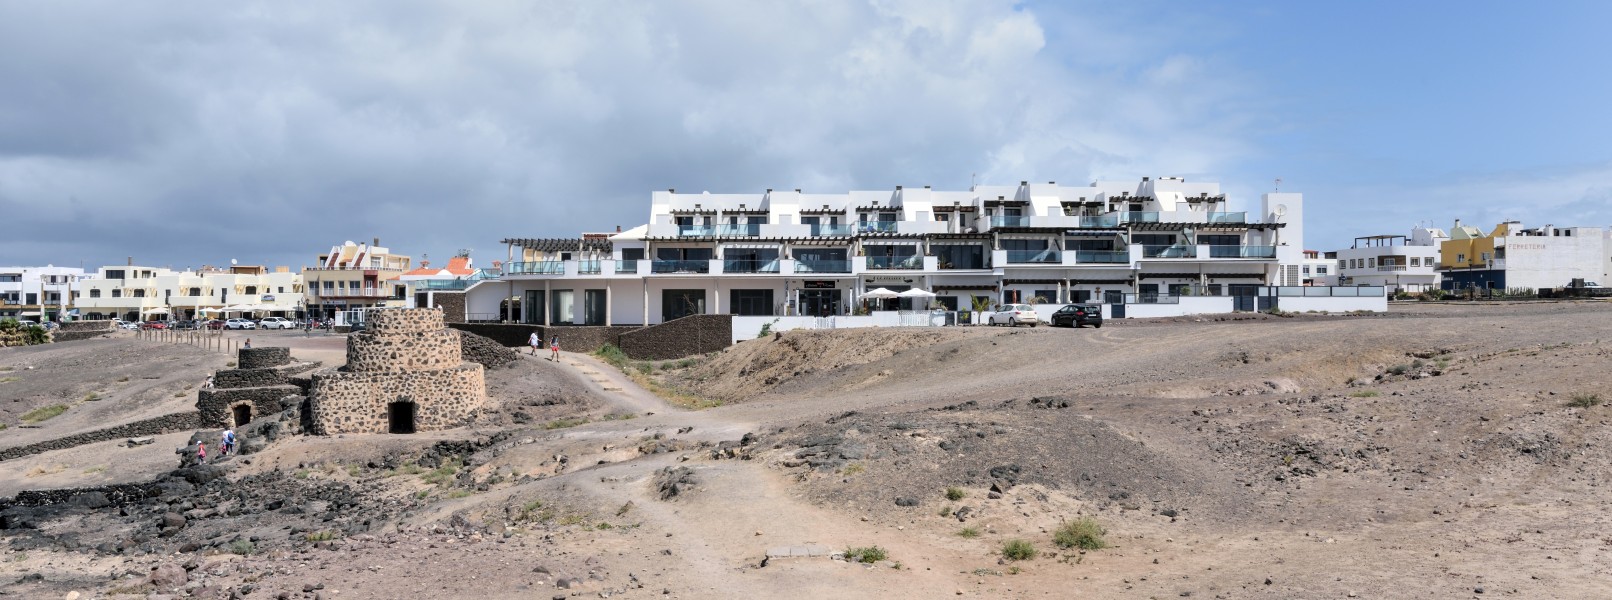 Fuerteventura - El Cotillo - Horno de cal